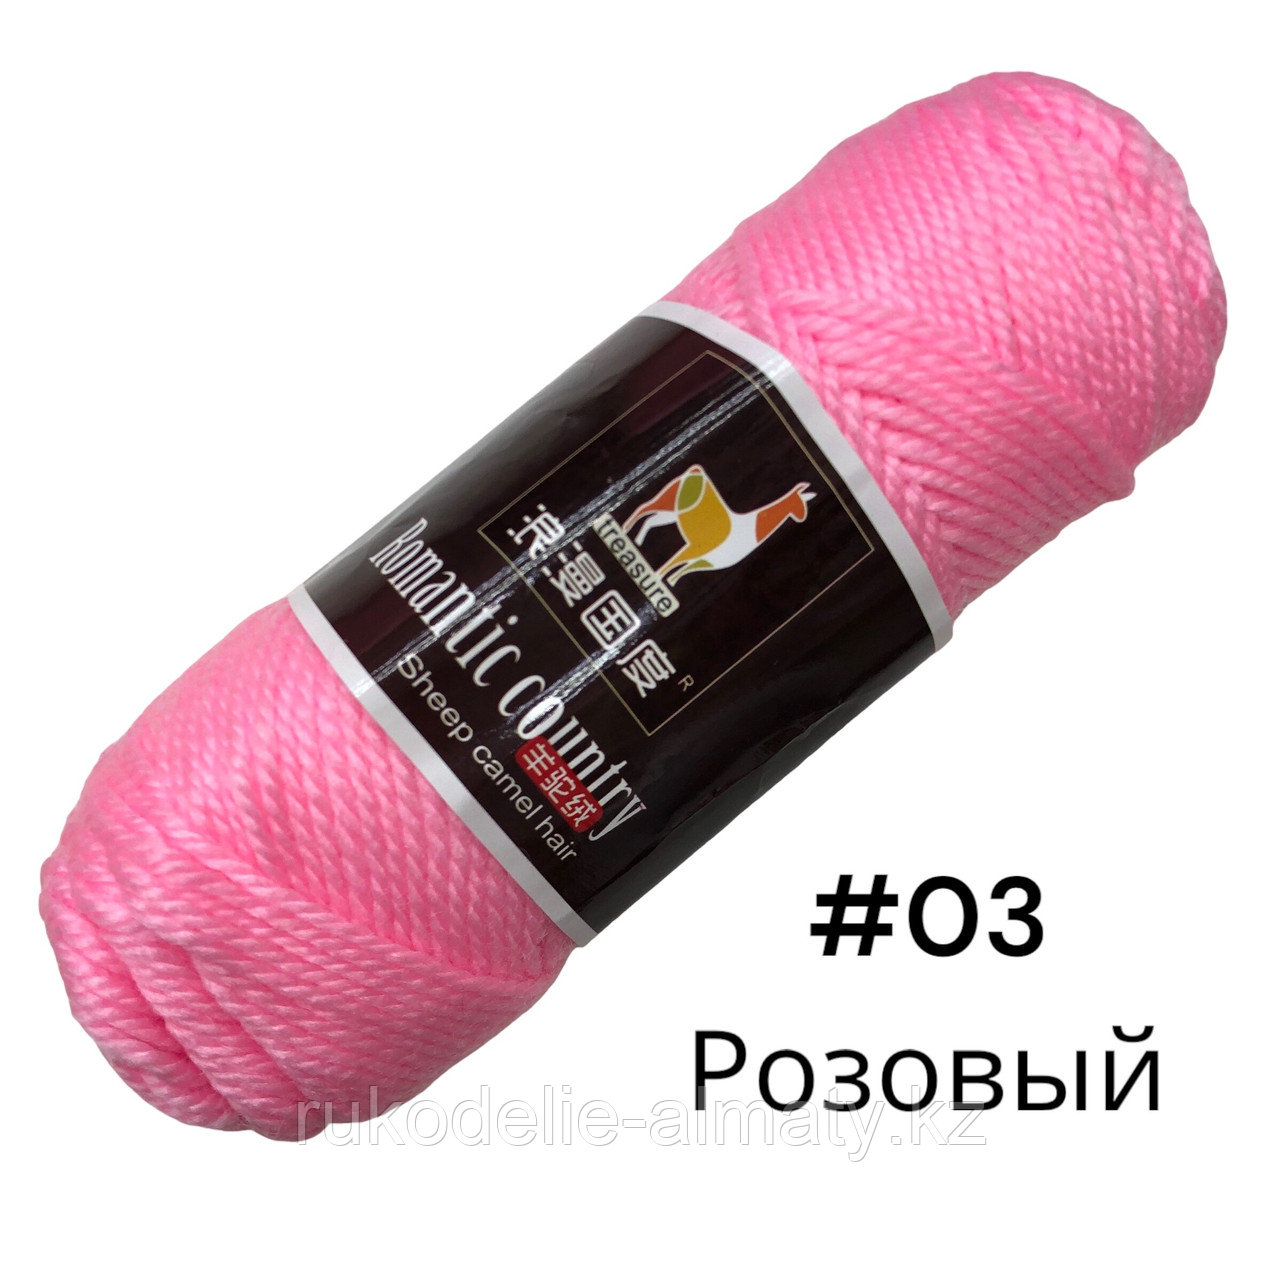 Пряжа для ручного вязания “Romantic country” в ассортимент розовый